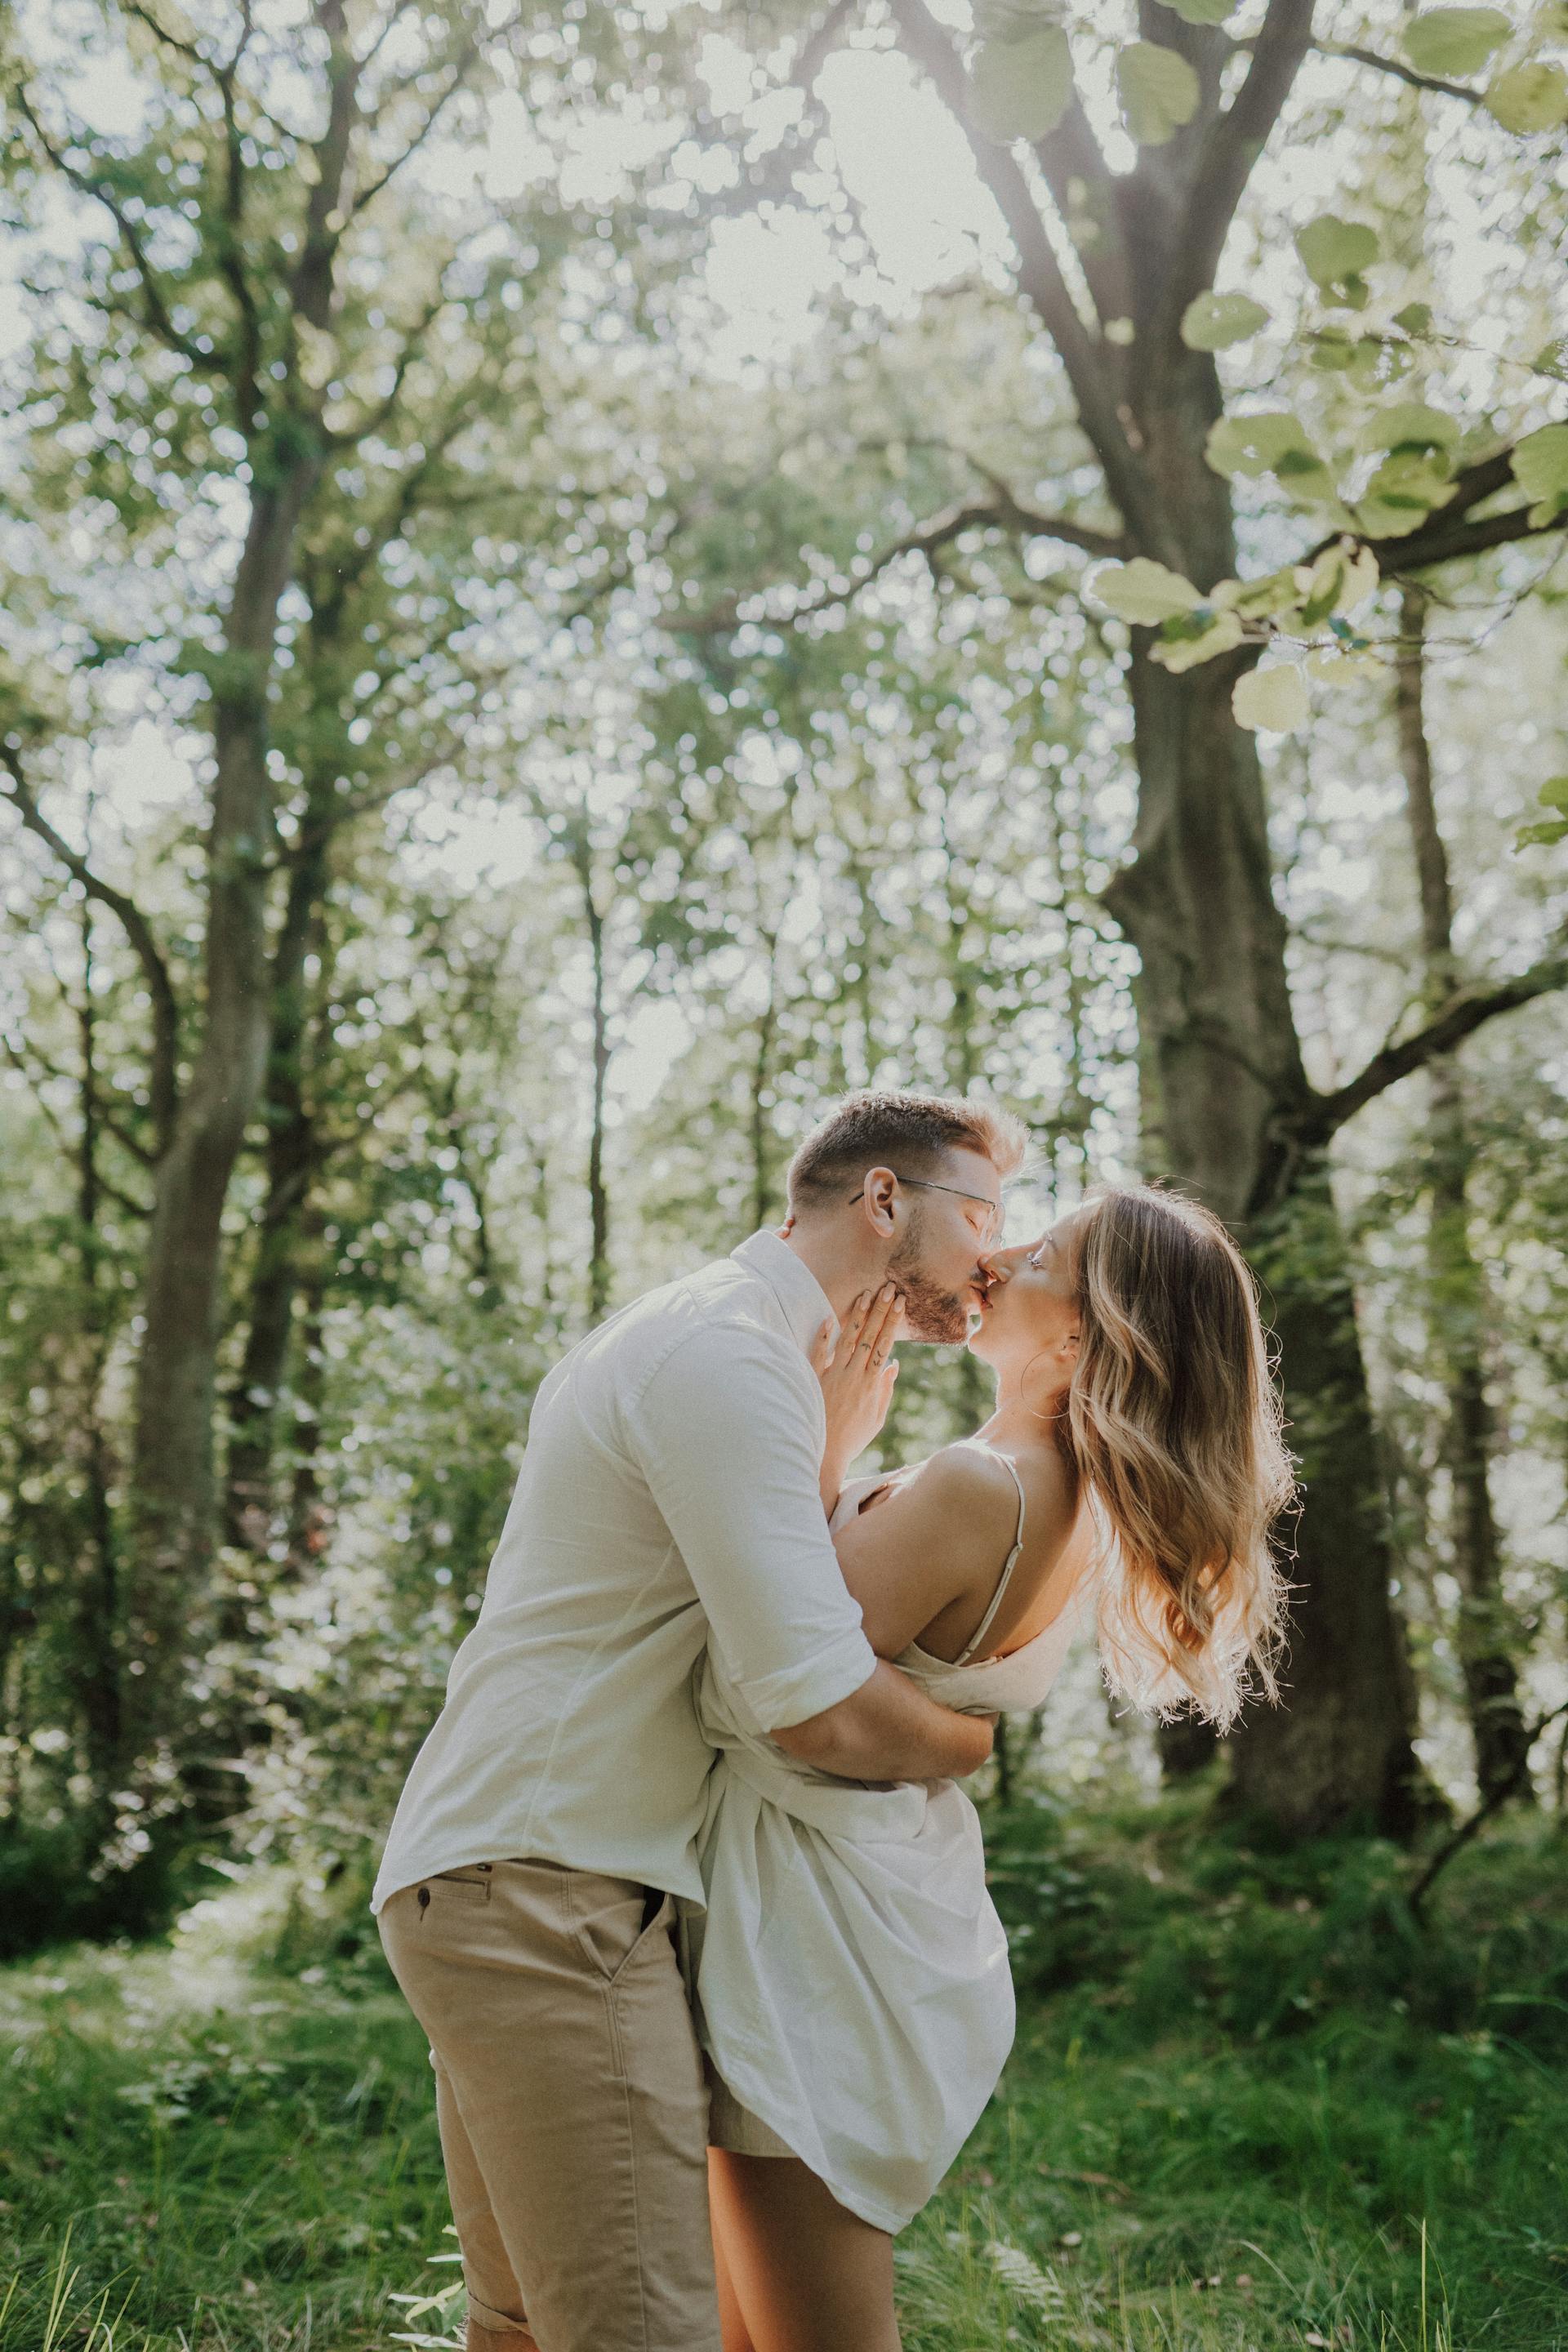 Una joven pareja besándose en un bosque | Fuente: Pexels